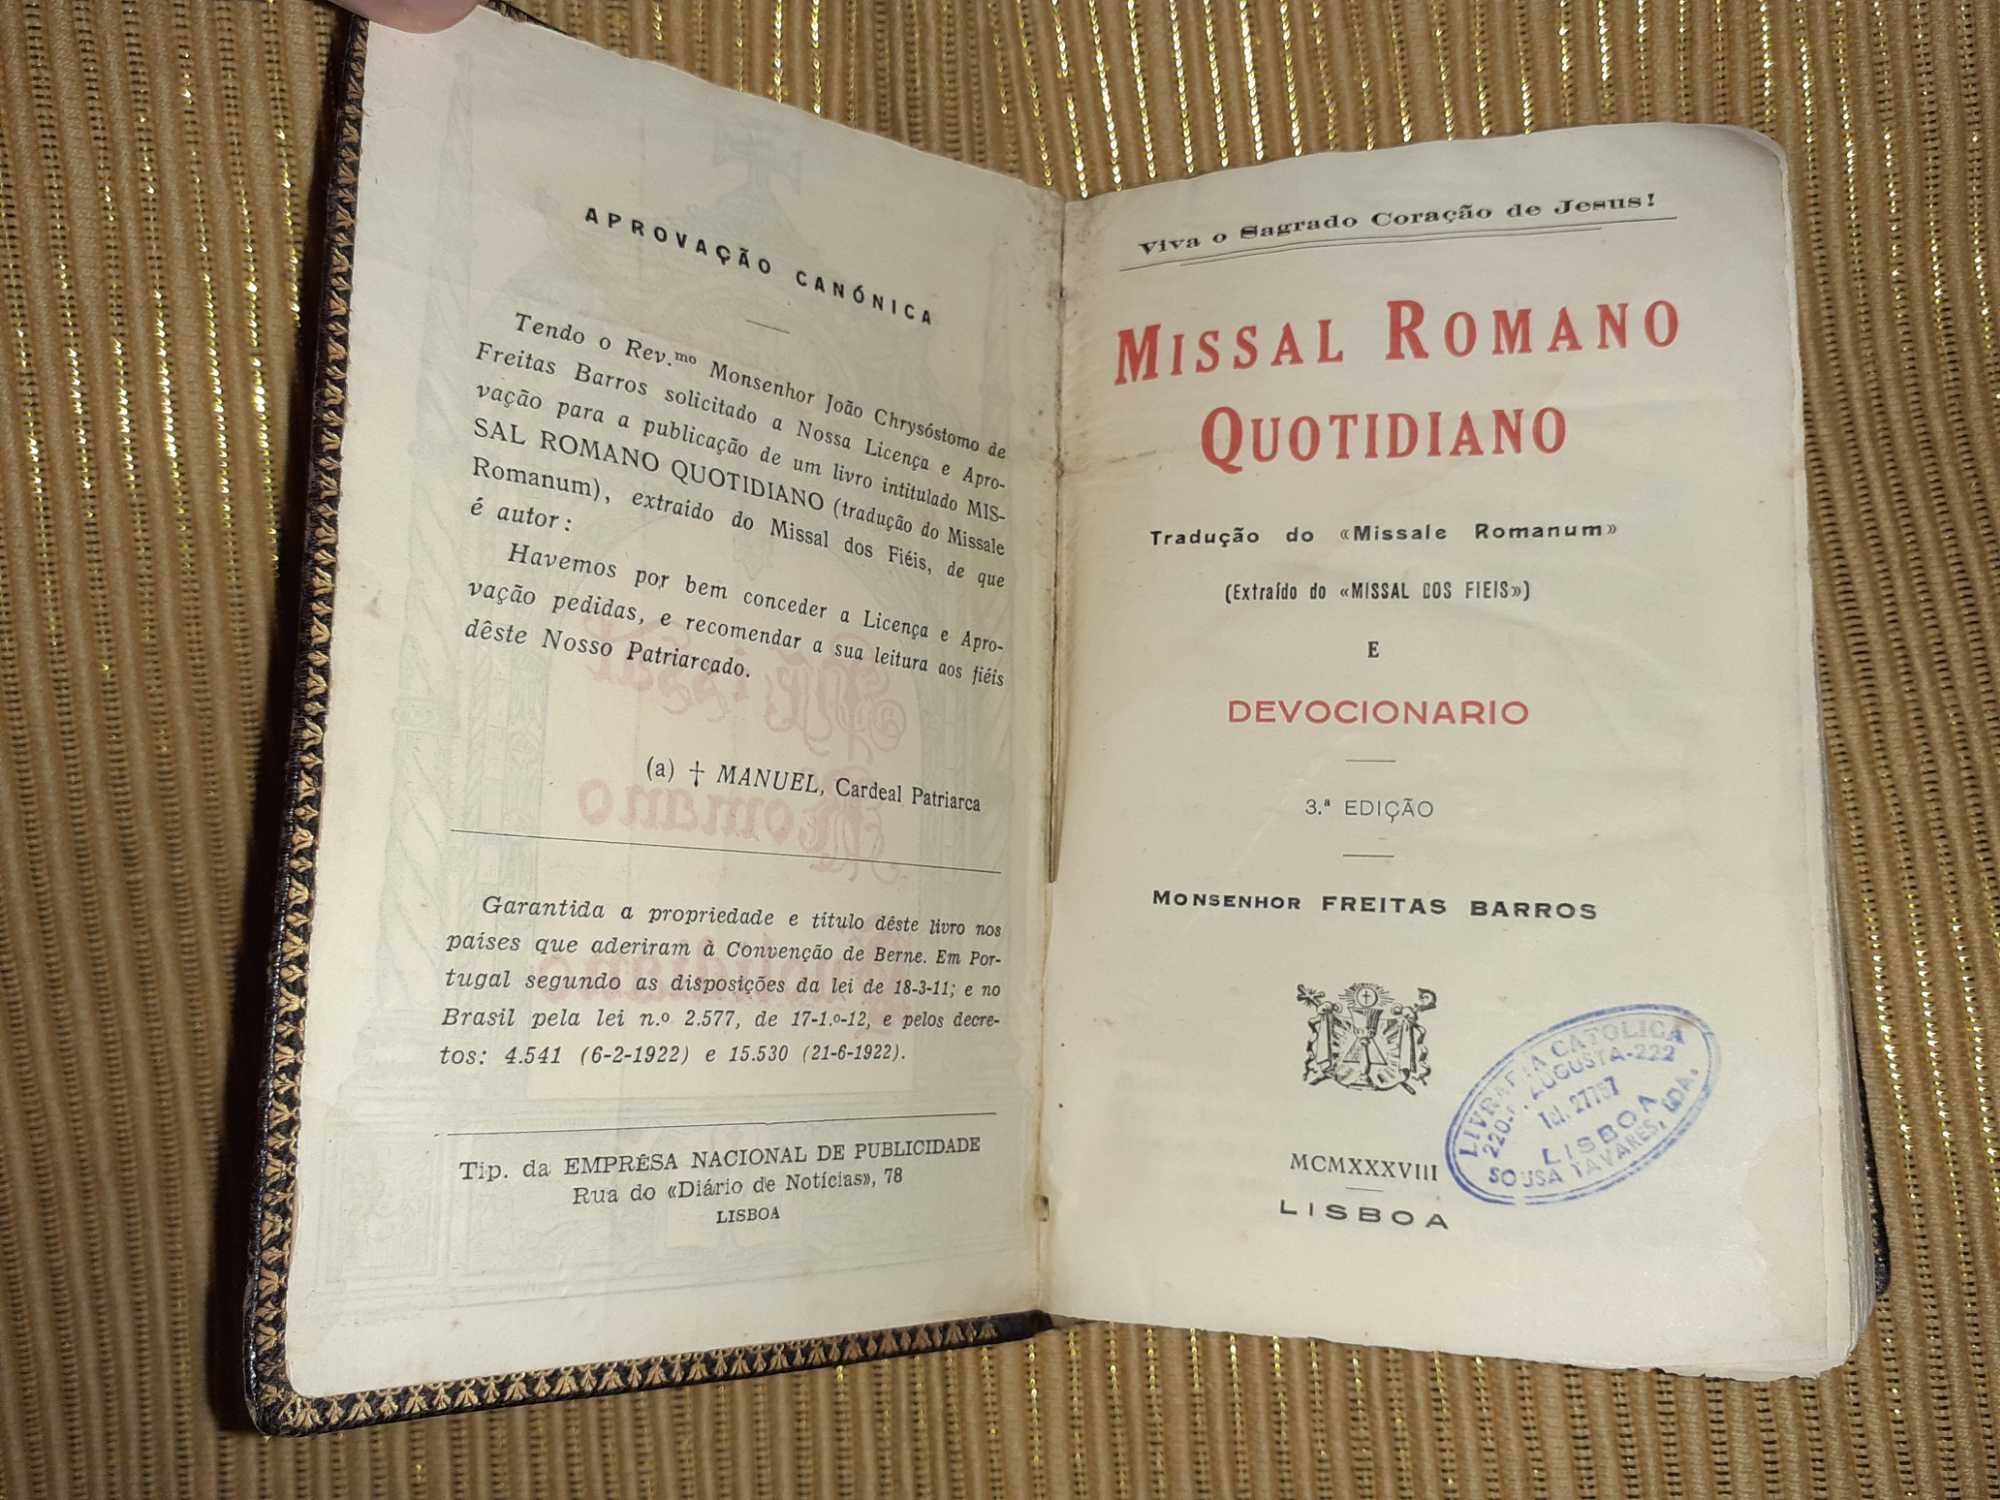 Missal  Romano Quotidiano Monsenhor Freitas Barros 3a Edição